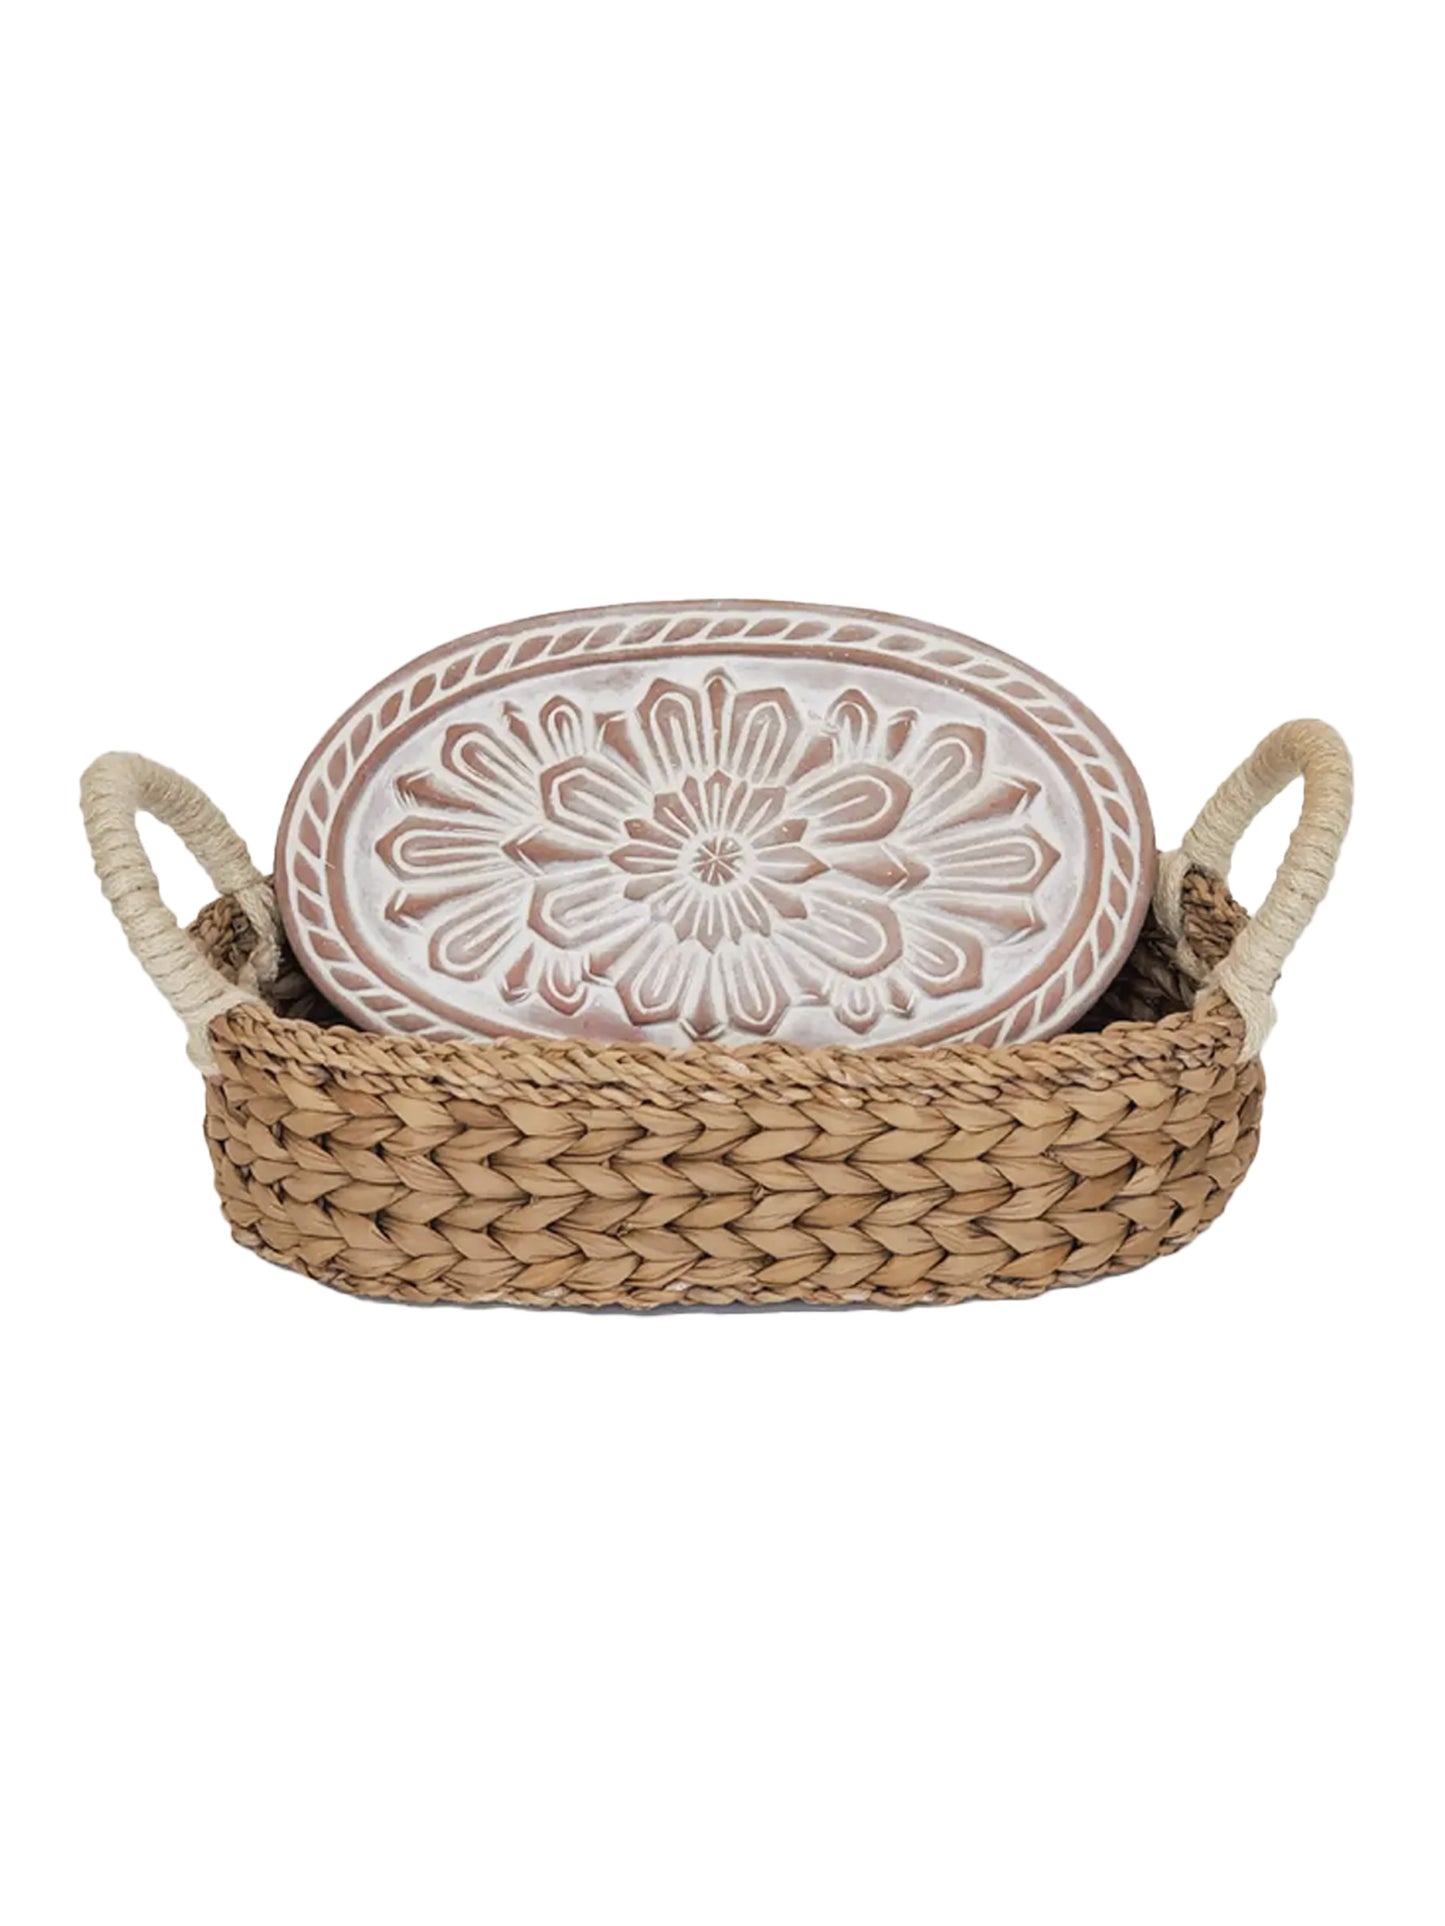 Bread-Warmer-and-Wicker-Basket-Flower-Oval-Weston-Table